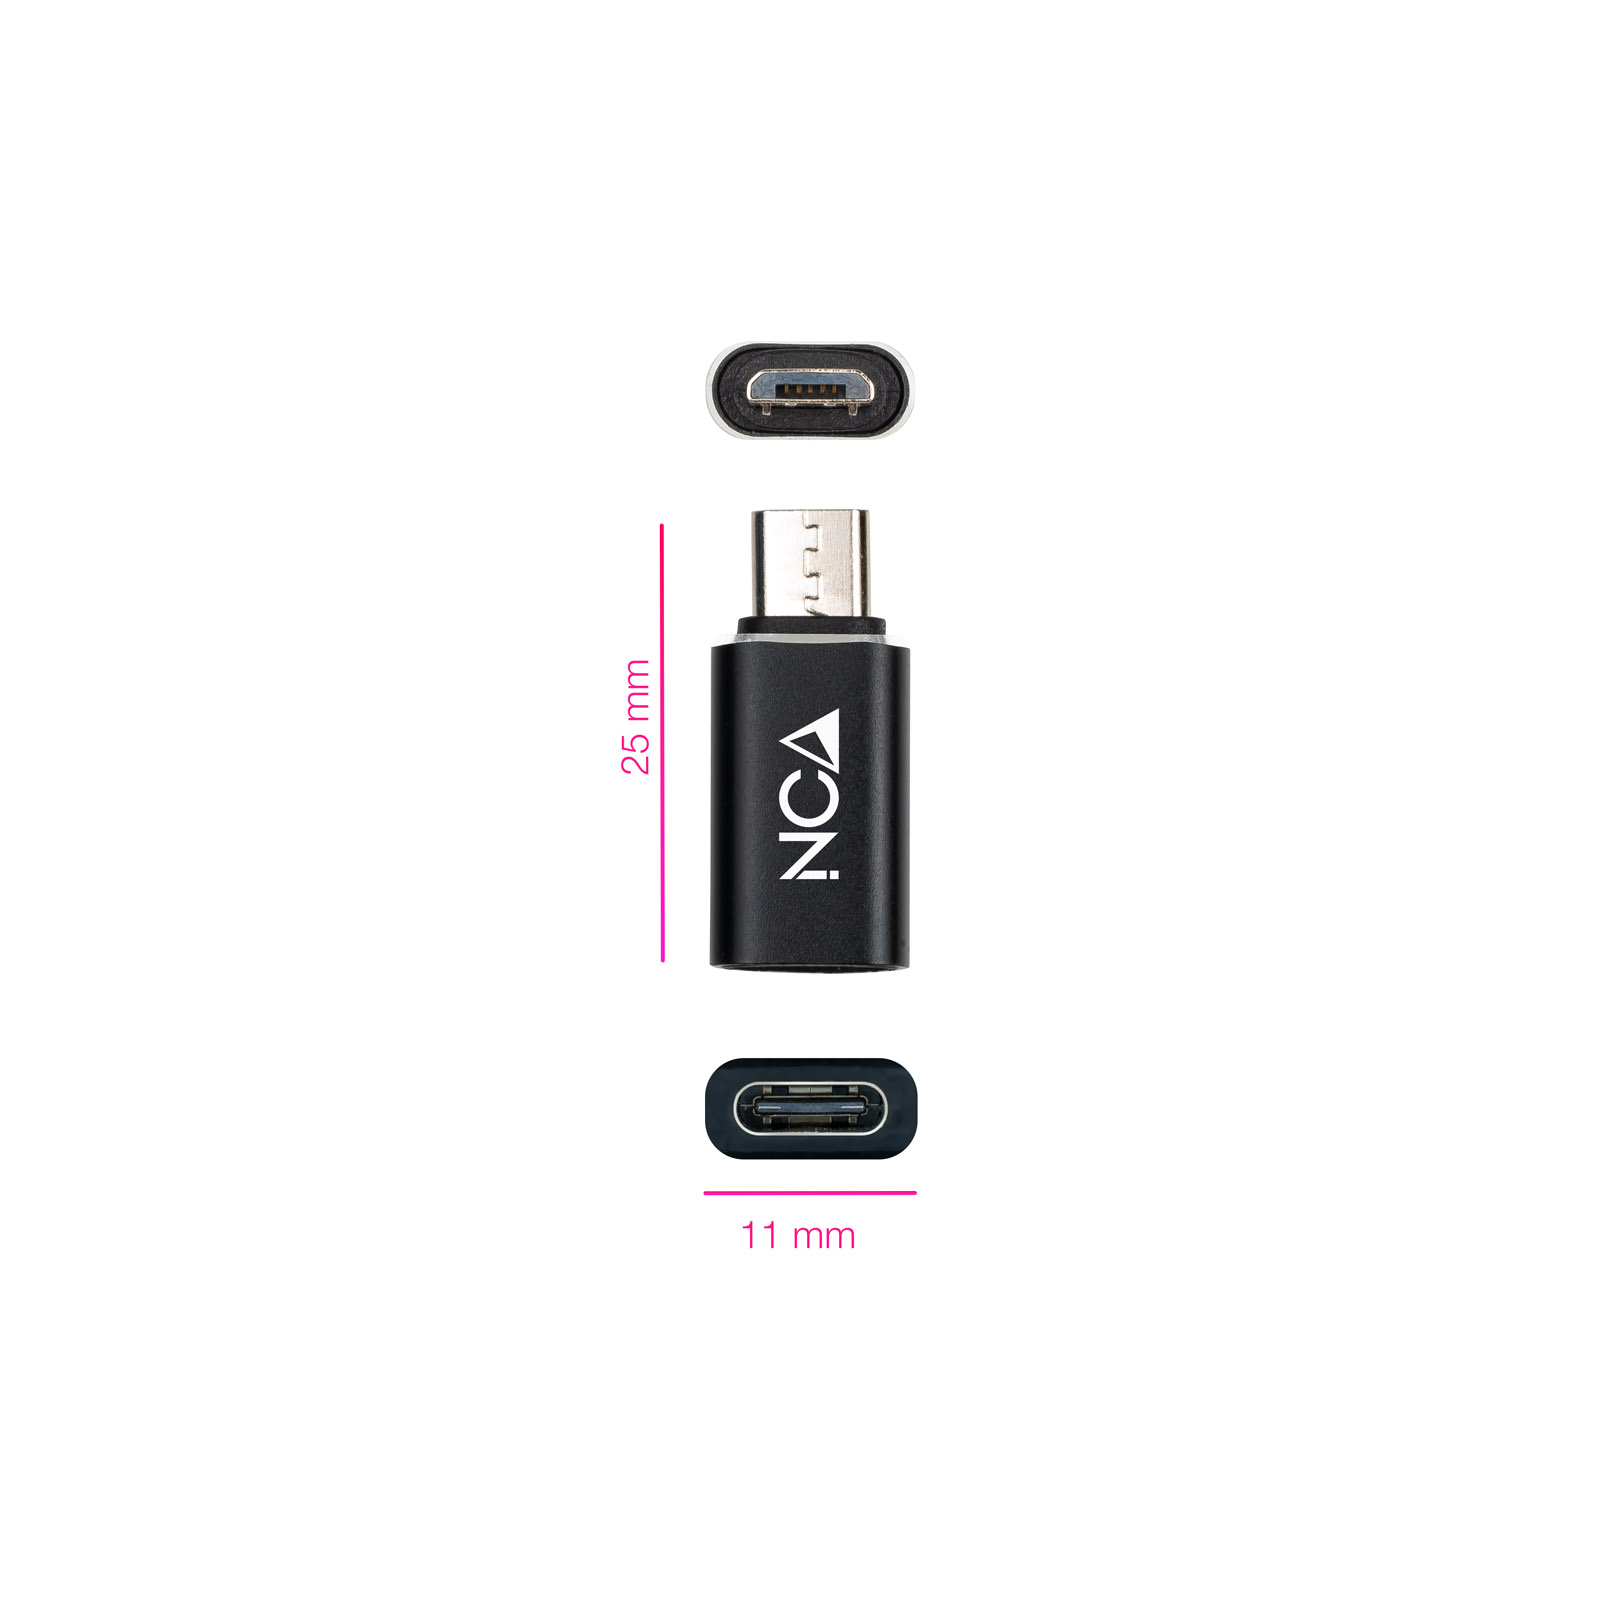 Adaptateur Micro USB/MA USB-C/H Nanocable - Noir